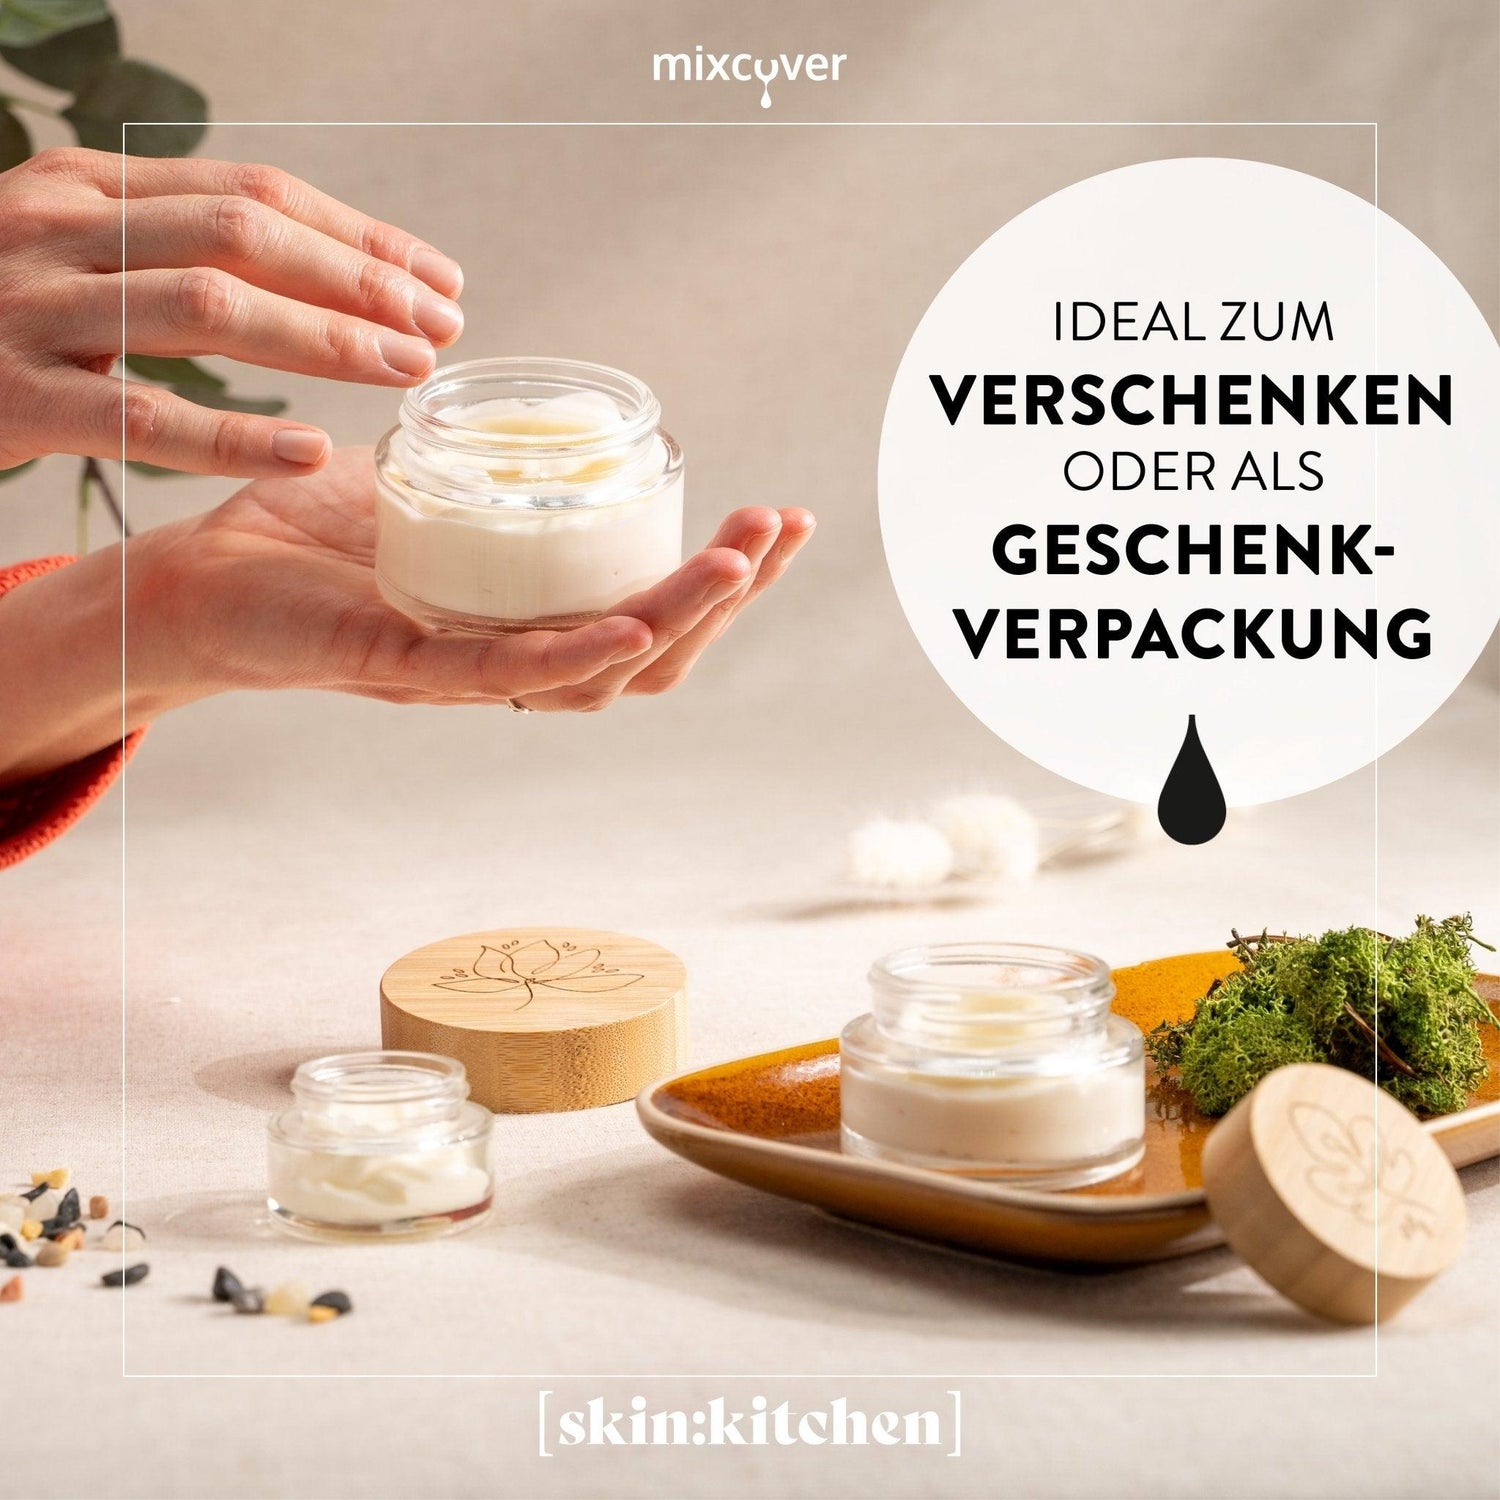 skinkitchen Glastiegel mit Bambusdeckel & Gravur für selbstgemachte Kosmetik 3er Set 100g "Klar" - Mixcover - skin:kitchen